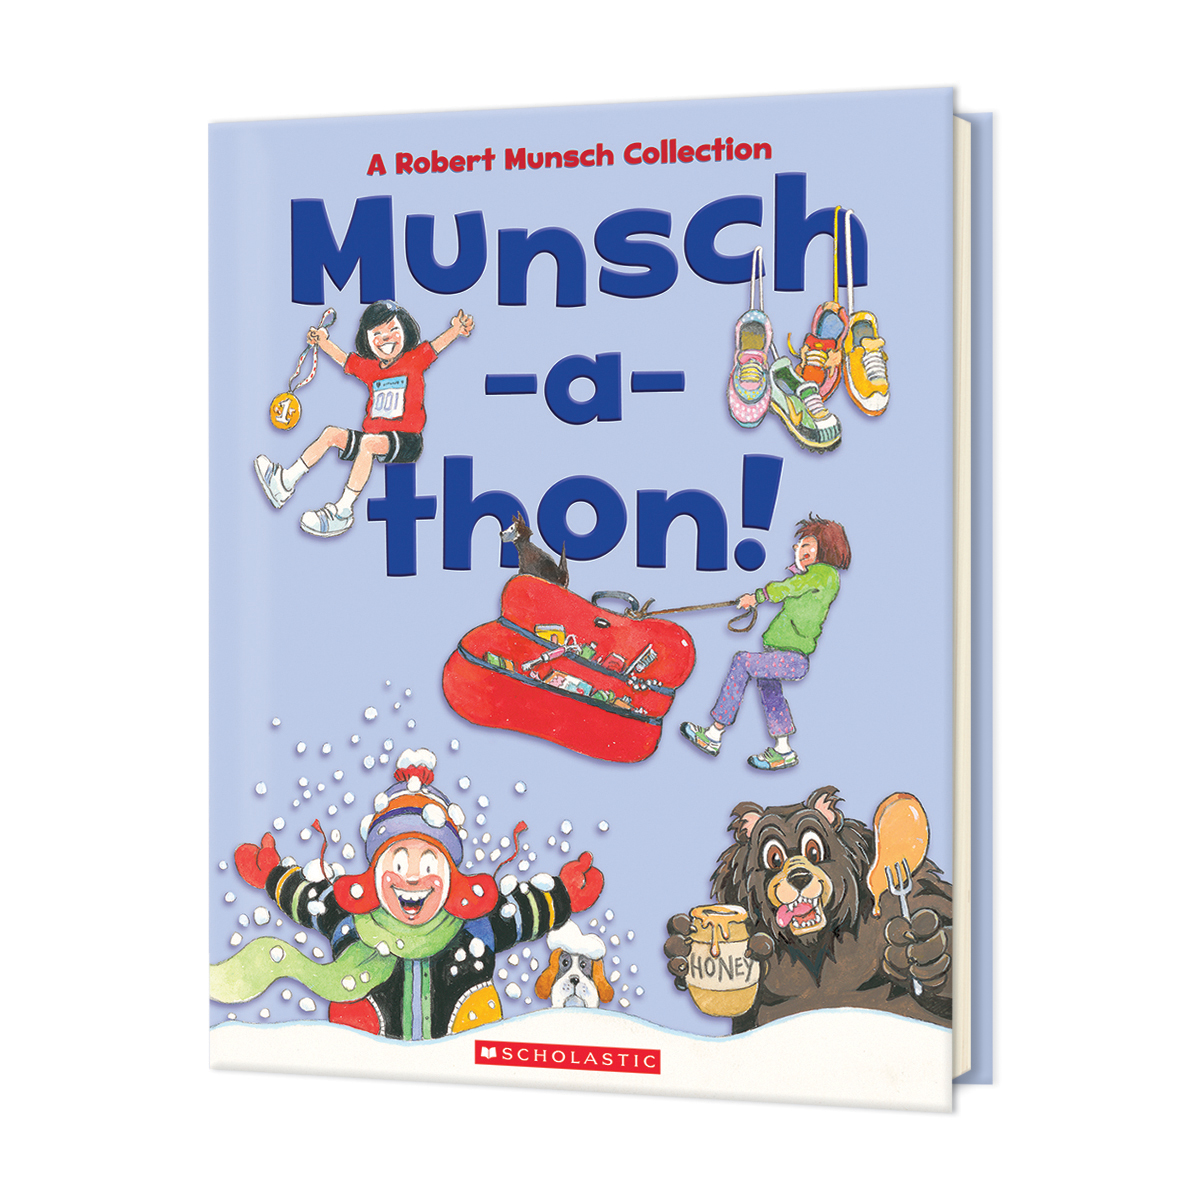  Munsch-a-thon! 